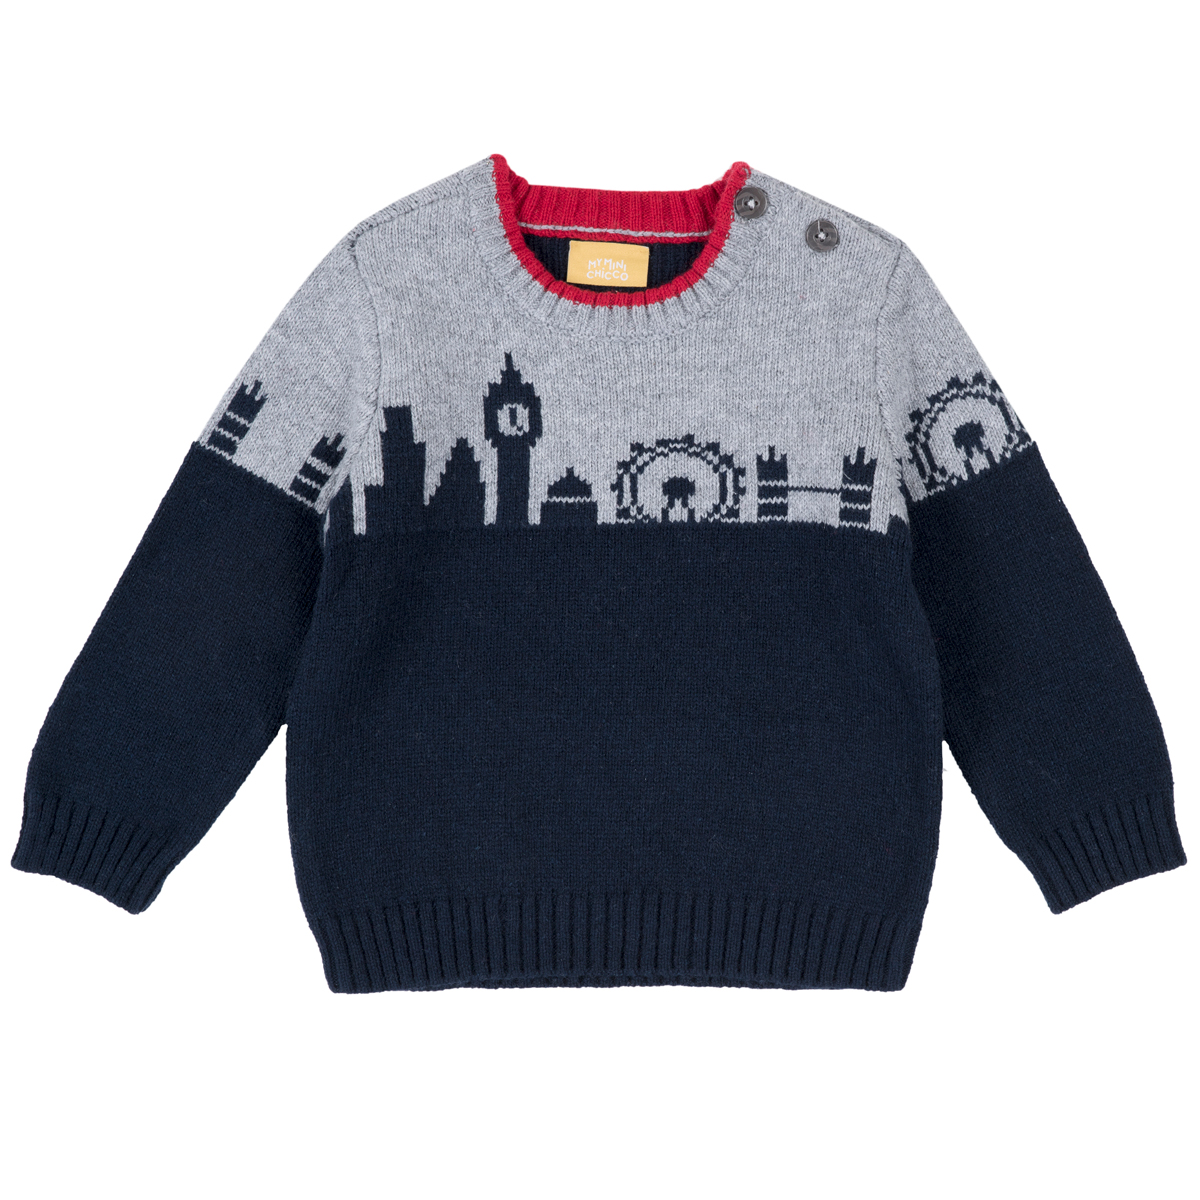 Pulover copii Chicco, tricotat, 69385 CHICCO imagine noua